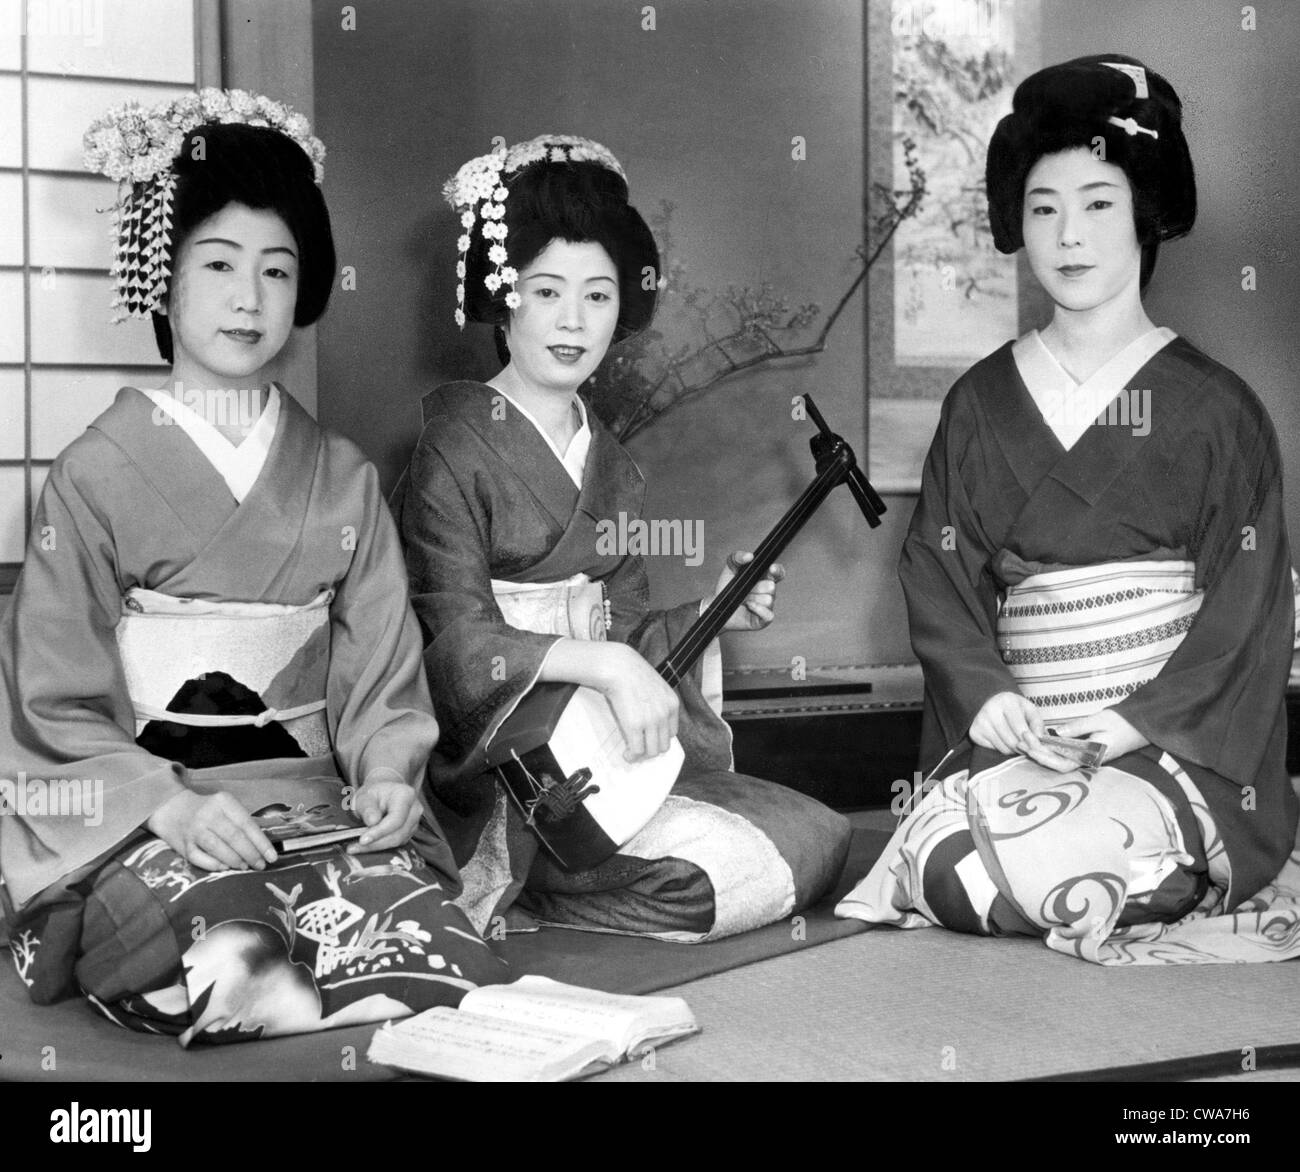 Japanische Frauen, undatiert... Höflichkeit: CSU Archive / Everett Collection Stockfoto